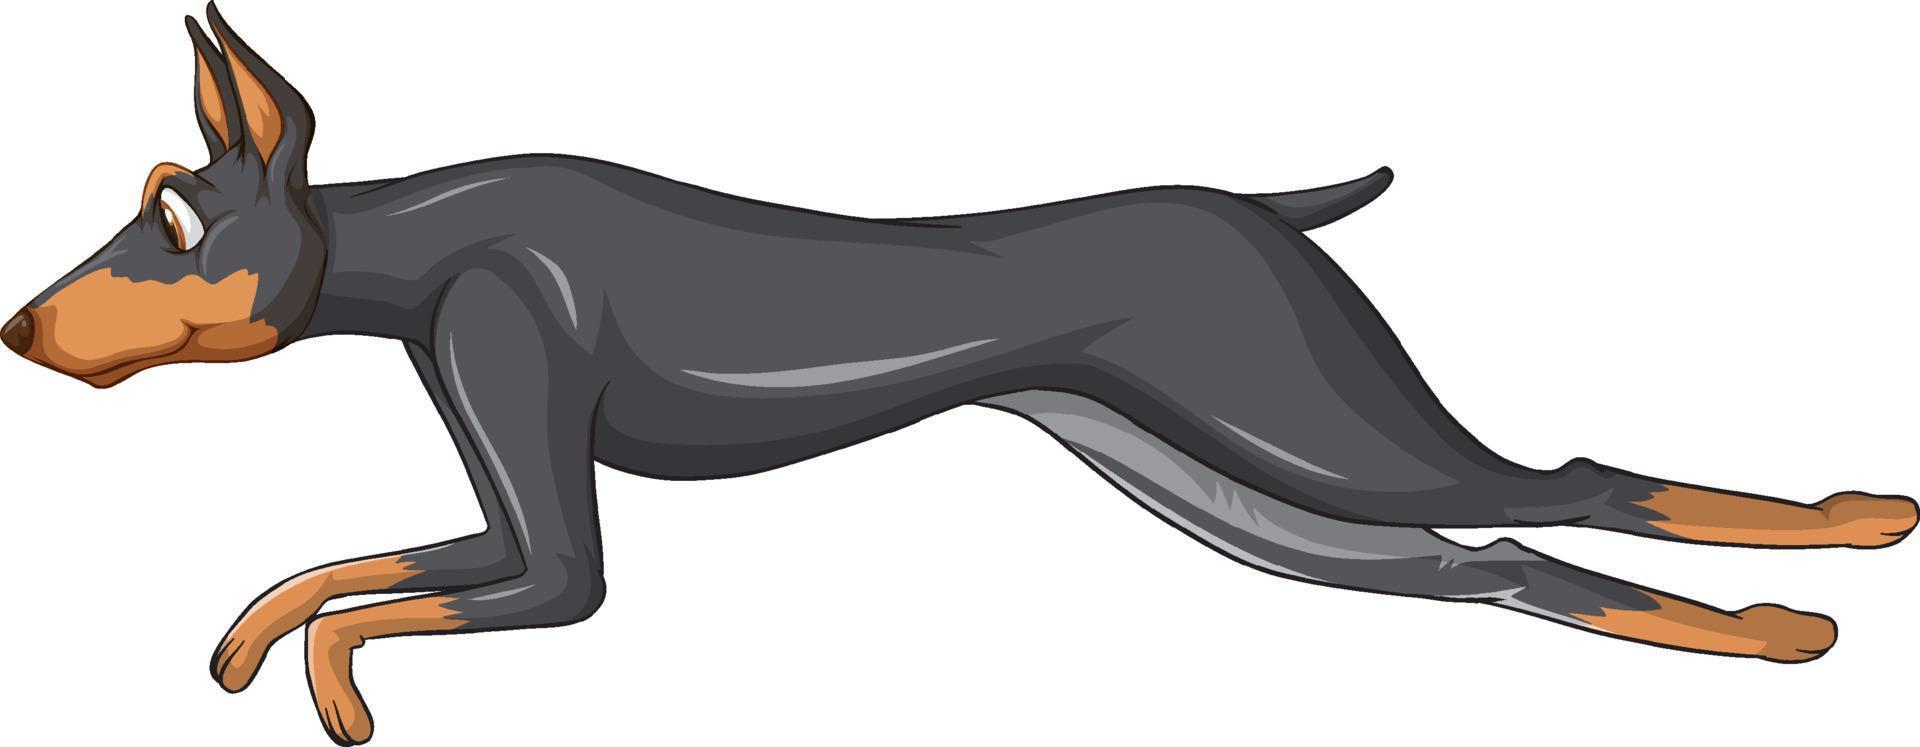 desenho animado do cão doberman pinscher em fundo branco vetor